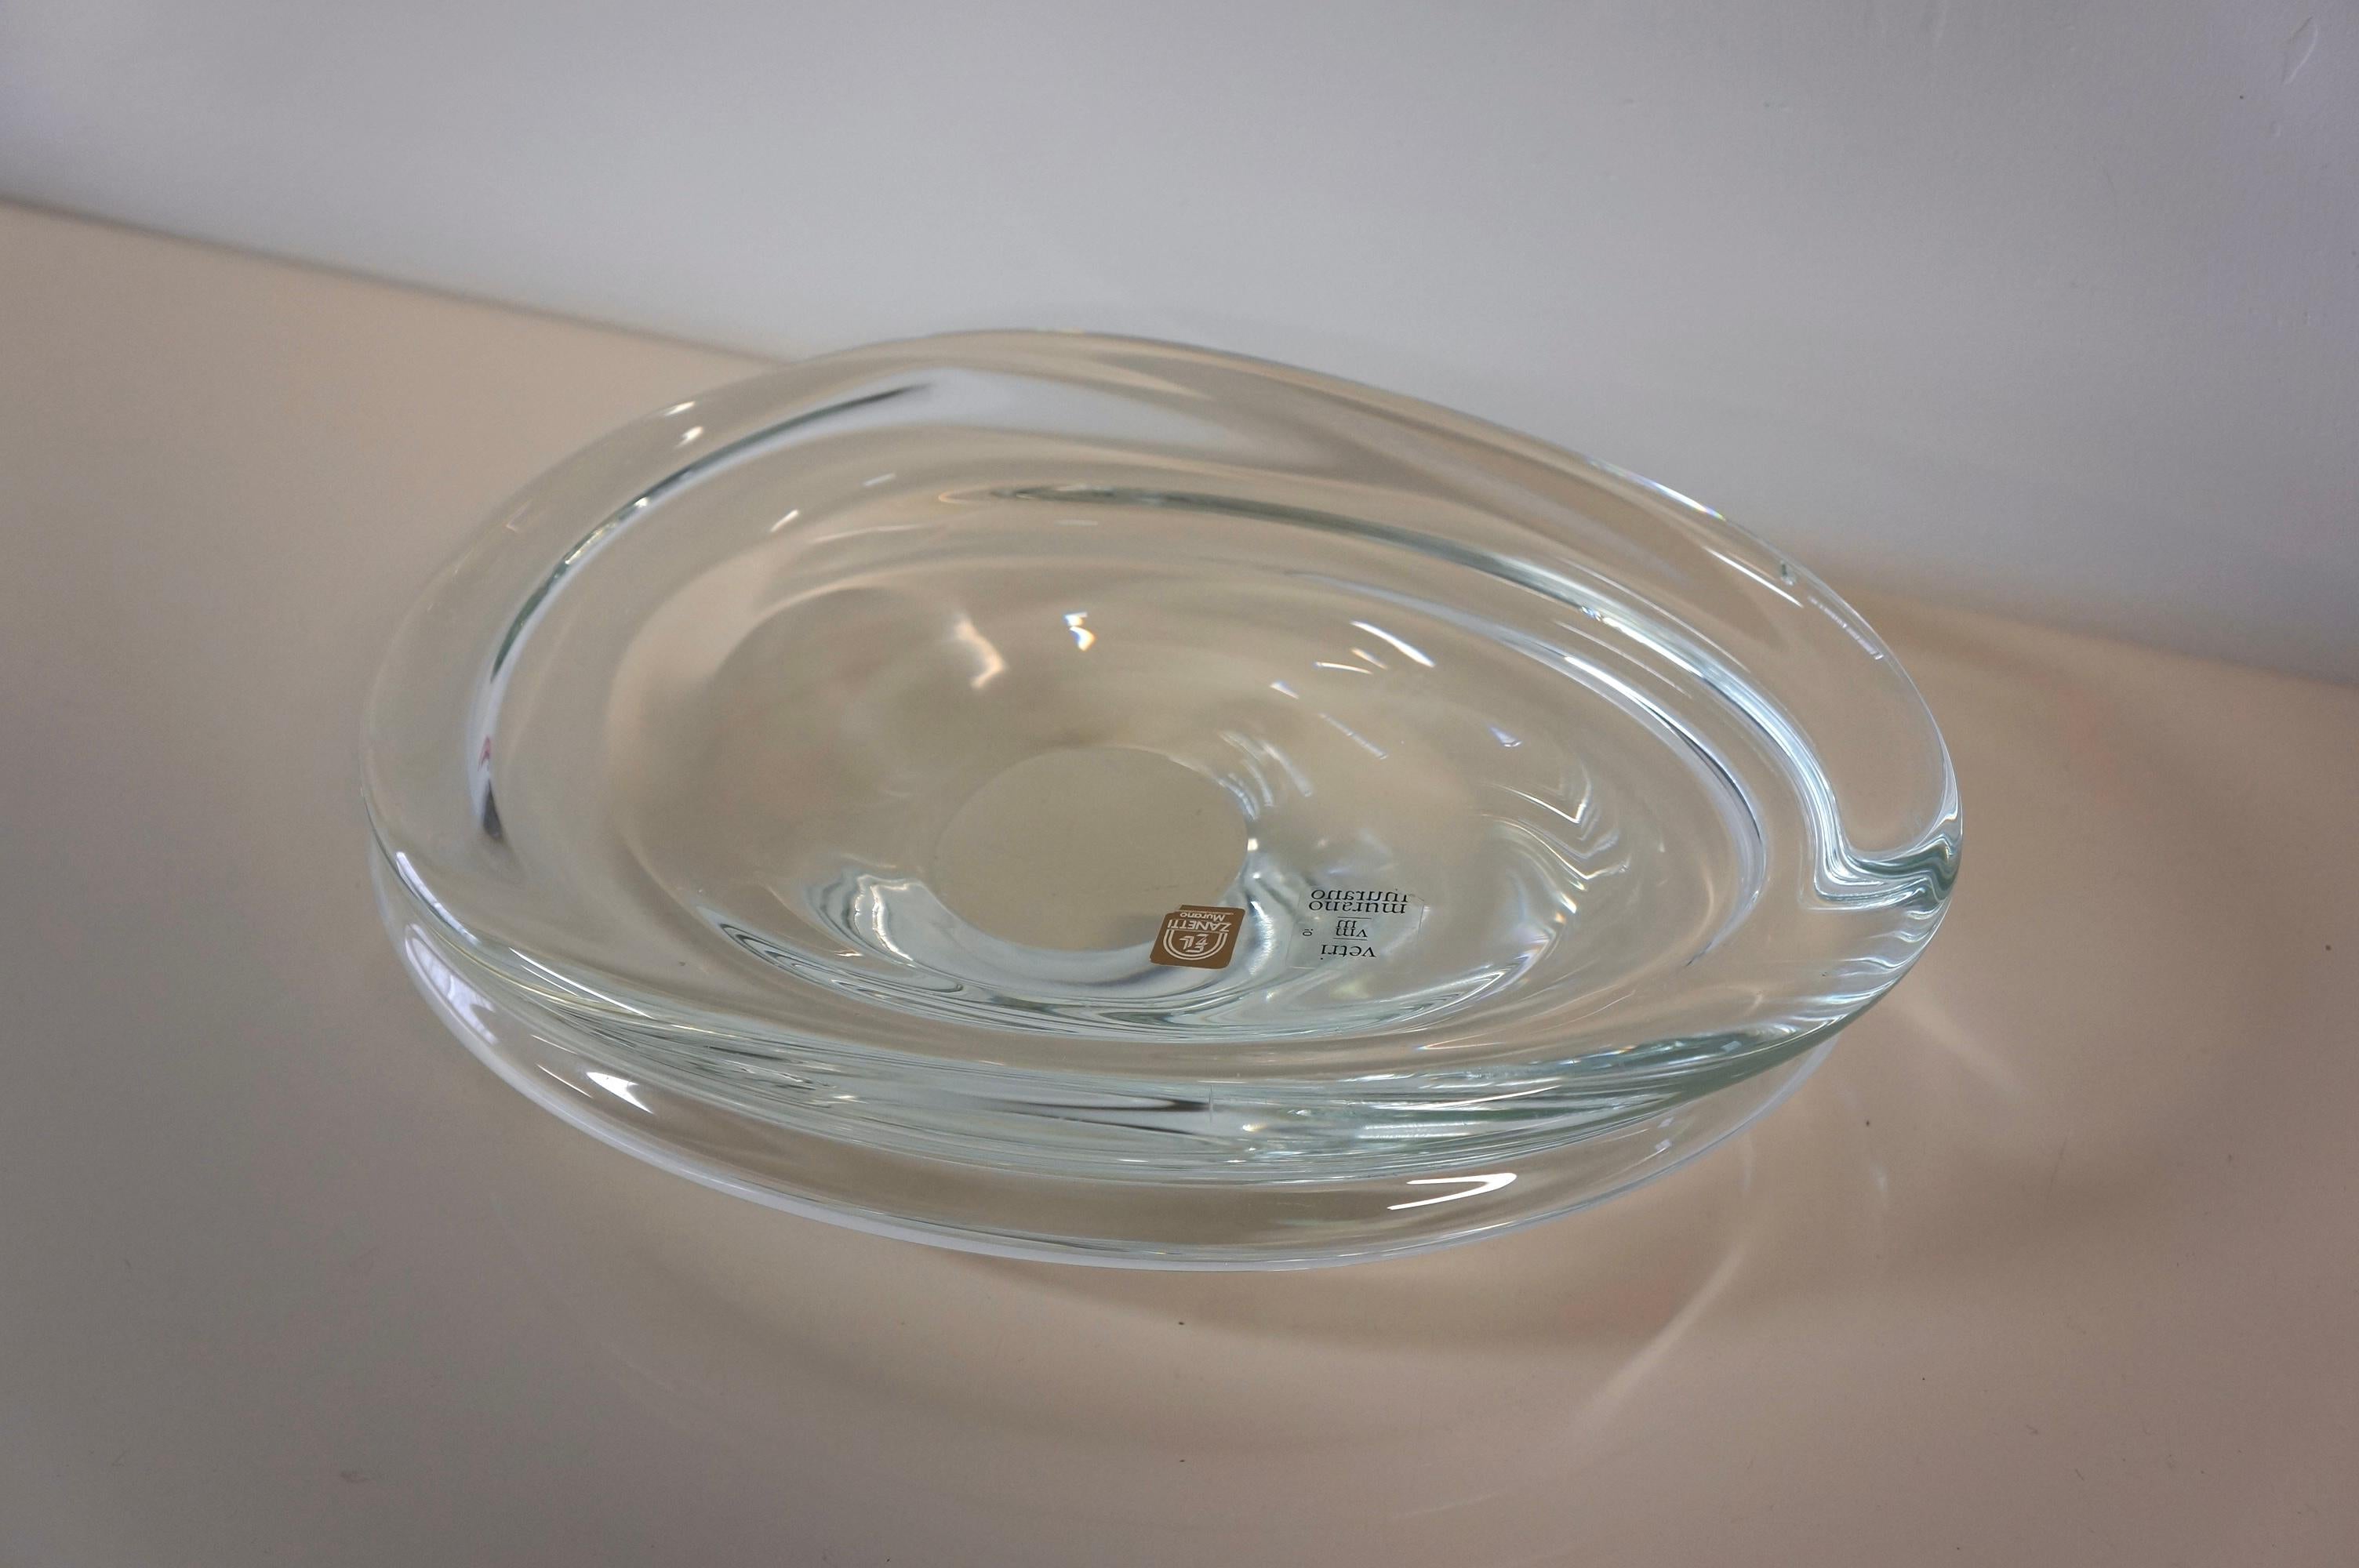 Spectaculaire pièce décorative en verre d'art transparent de Zanetti Murano. Ce splendide objet décoratif a été réalisé dans les années 1970, signé par Zanetti Murano. La forme est libre et présente des courbes sur les bords extérieurs. Il s'agit